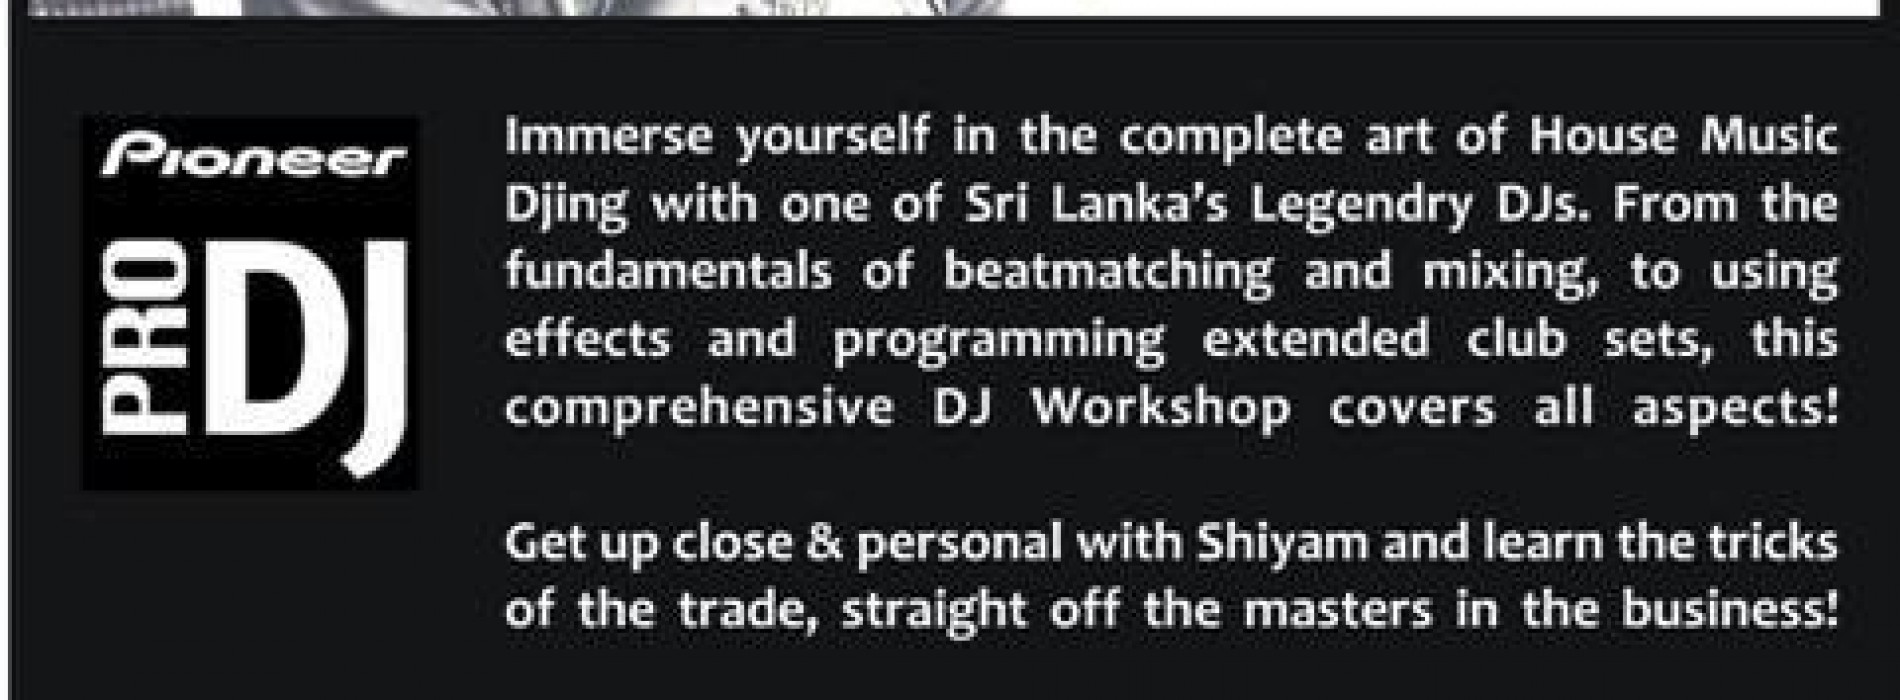 The Dj Workshop By Shiyam